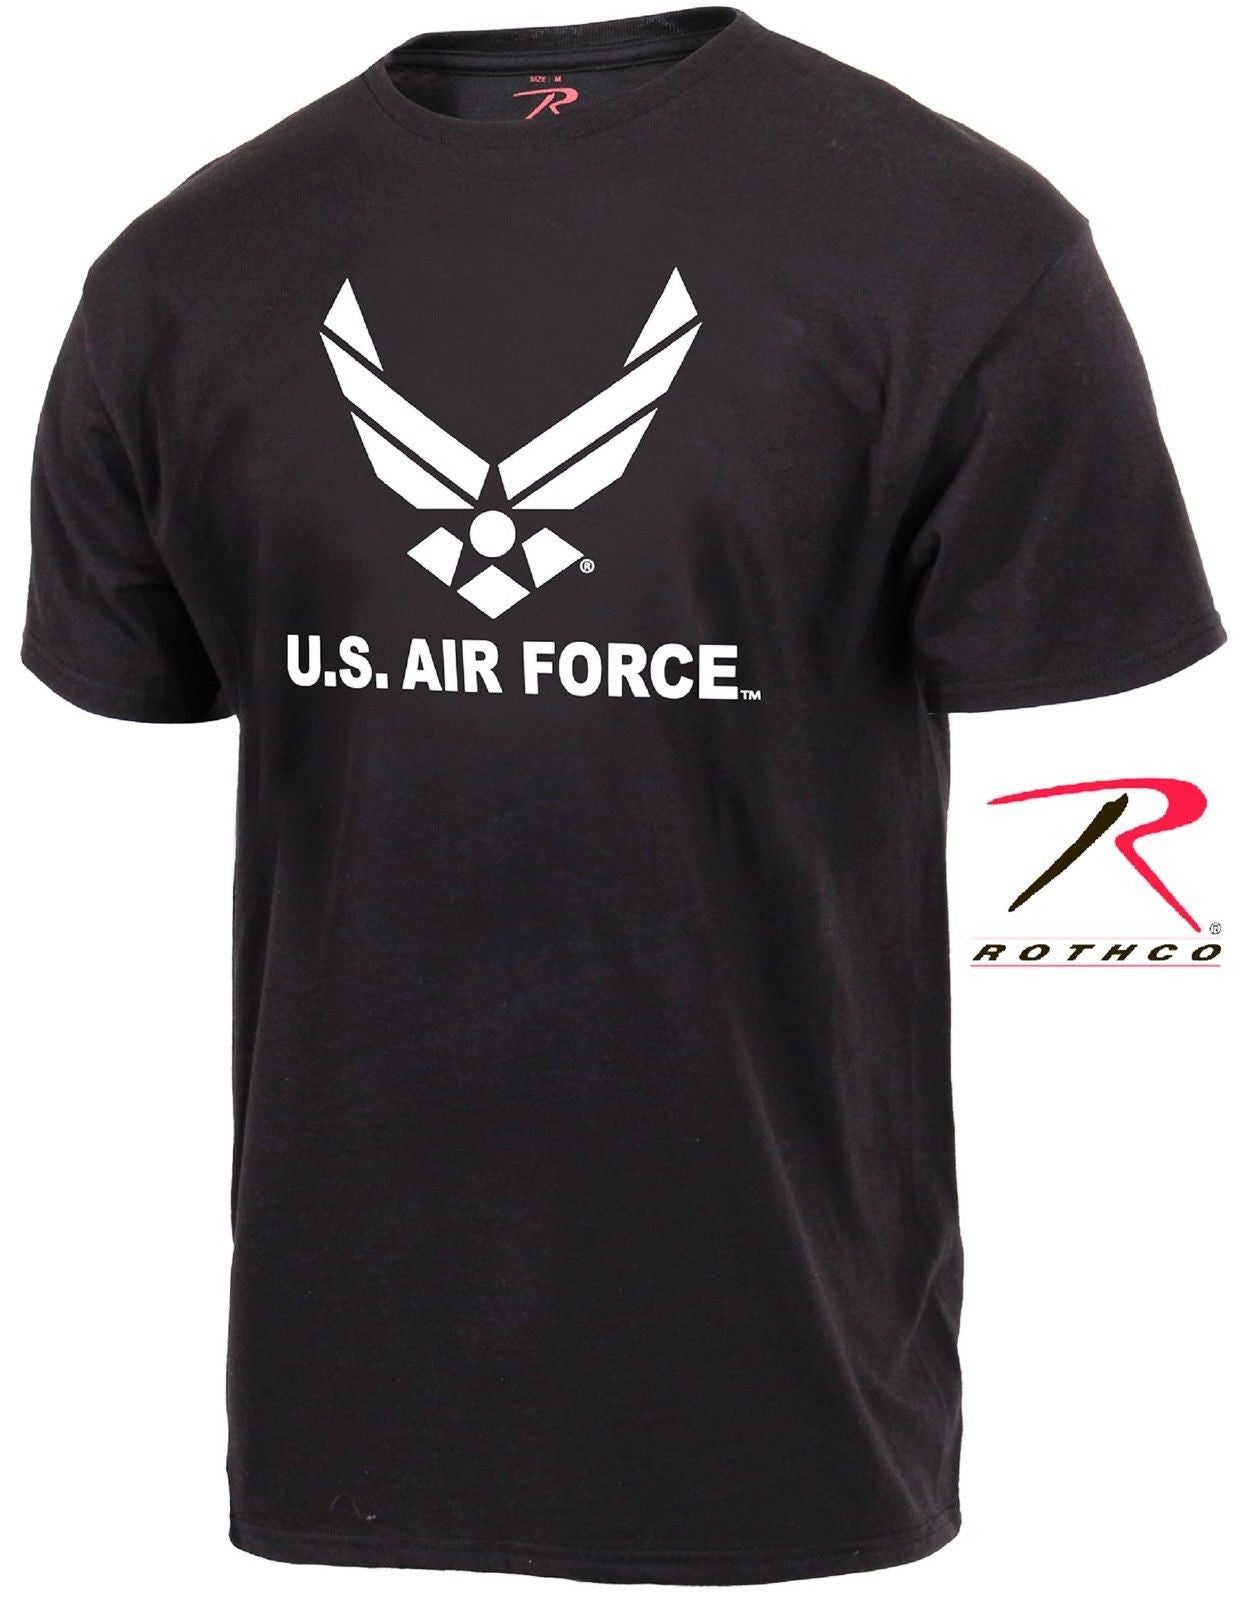 United States Air Force Tee Shirt - Rothco Mens Black USAF TShirt